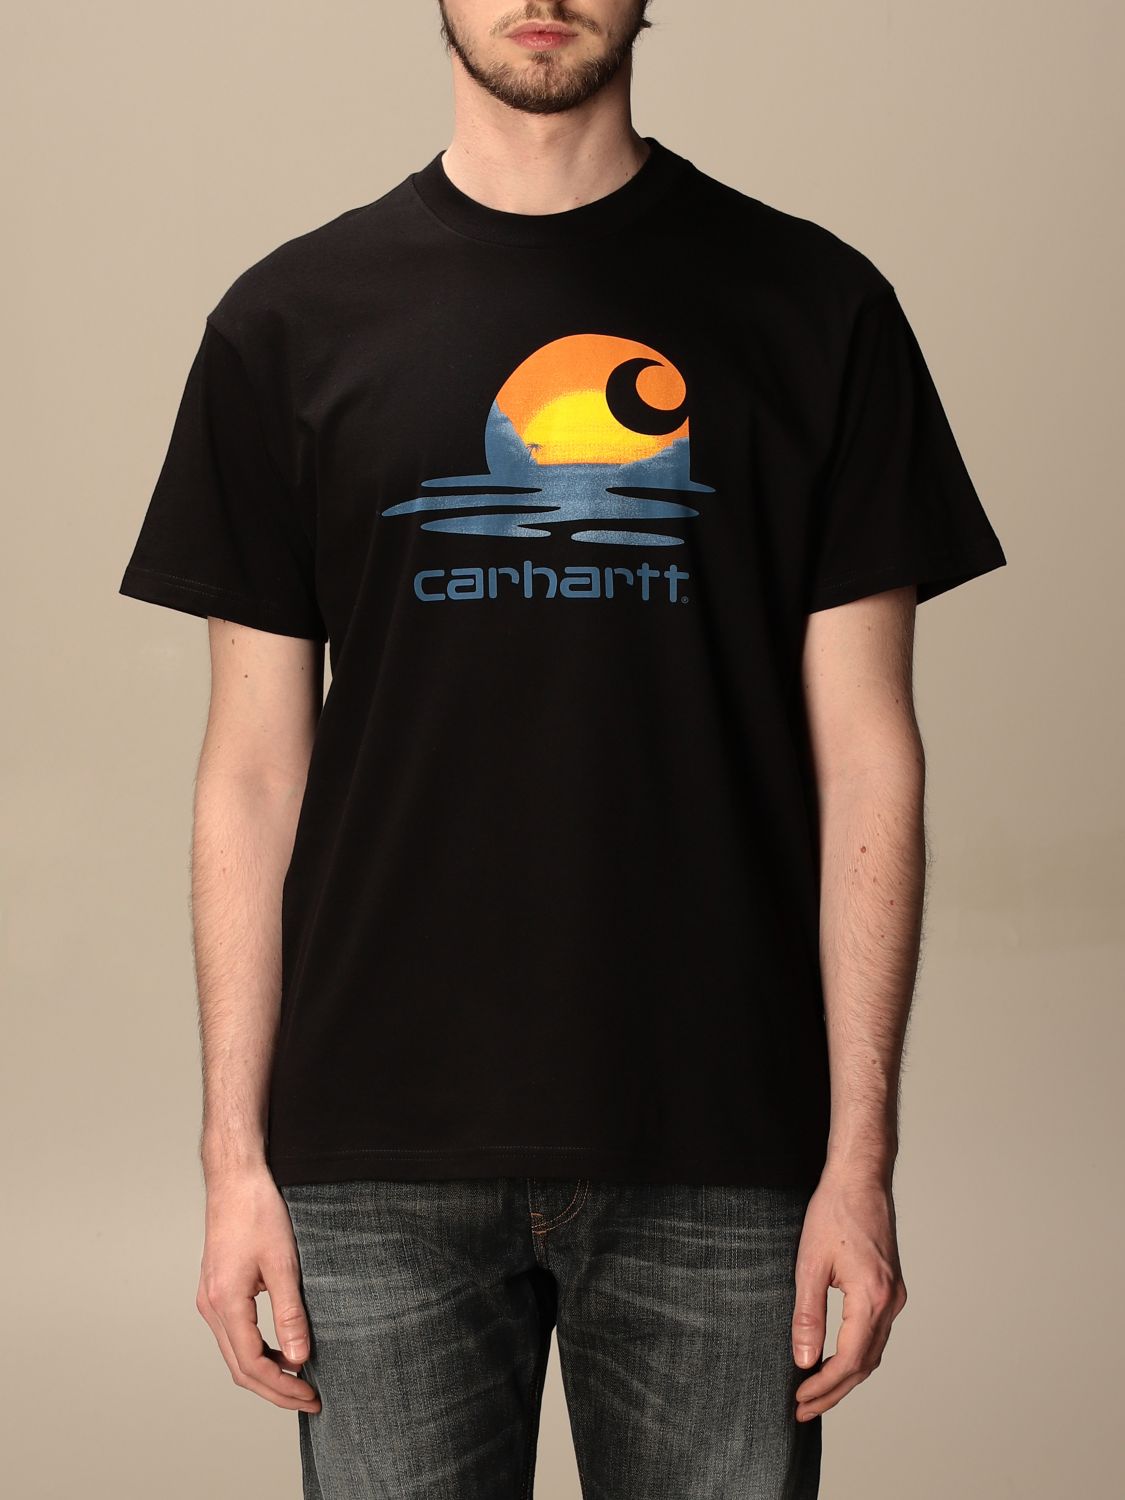 carhartt t-shirt herren